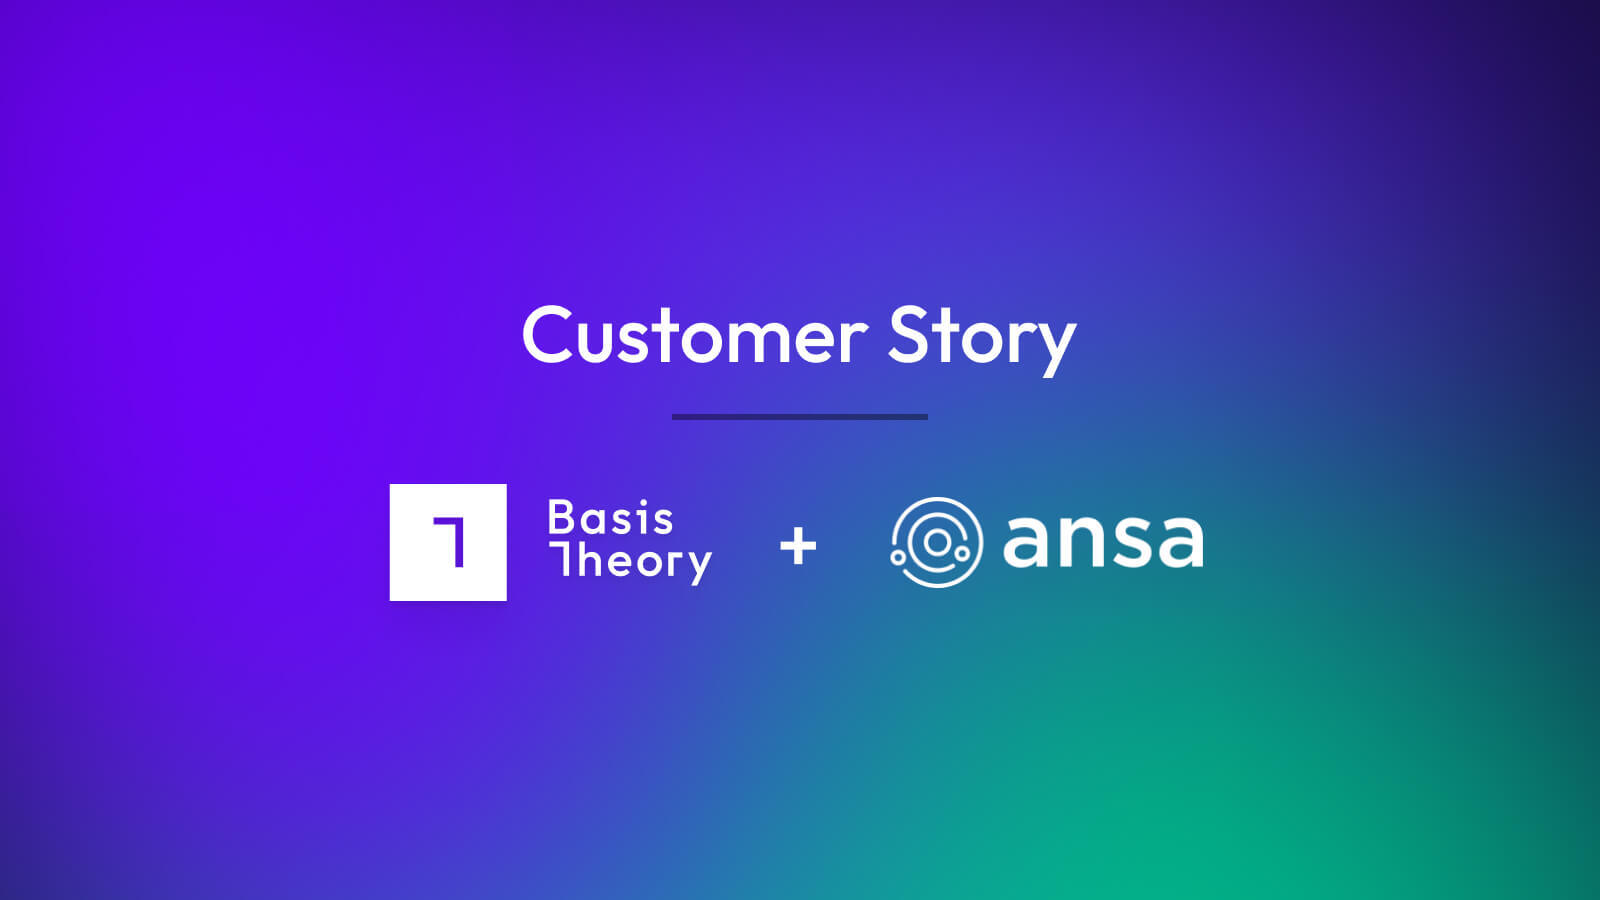 Ansa and Basis Theory customer story